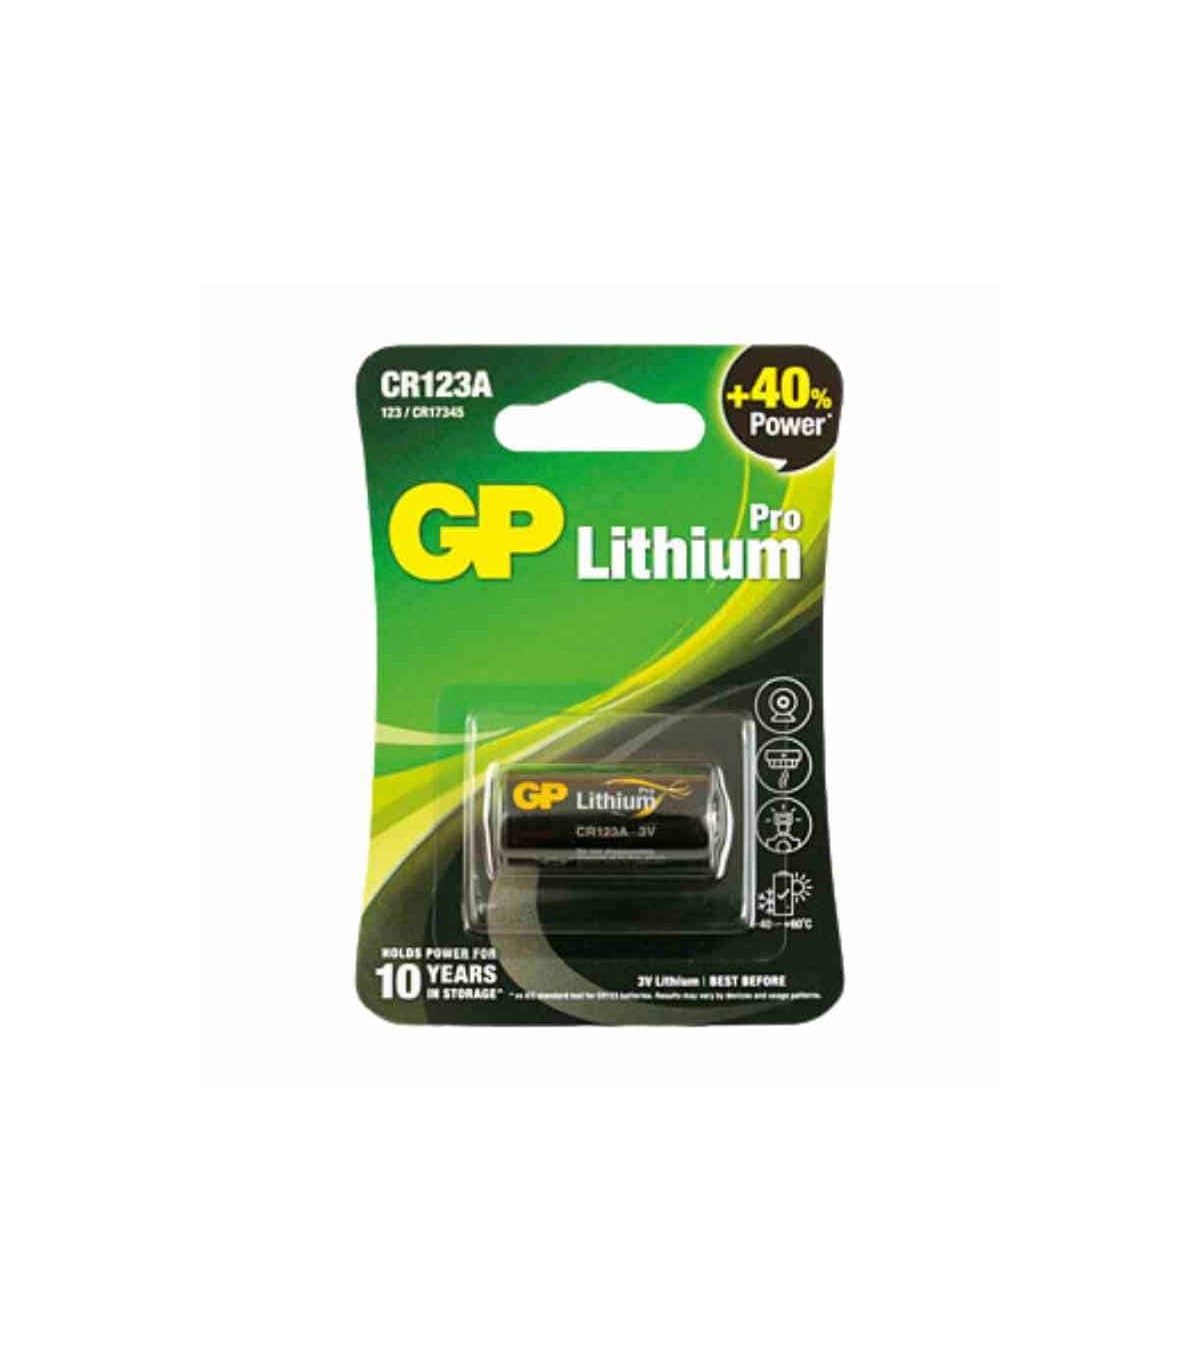 Batería de litio CR123A de 3V, 2 paquetes de Aruba